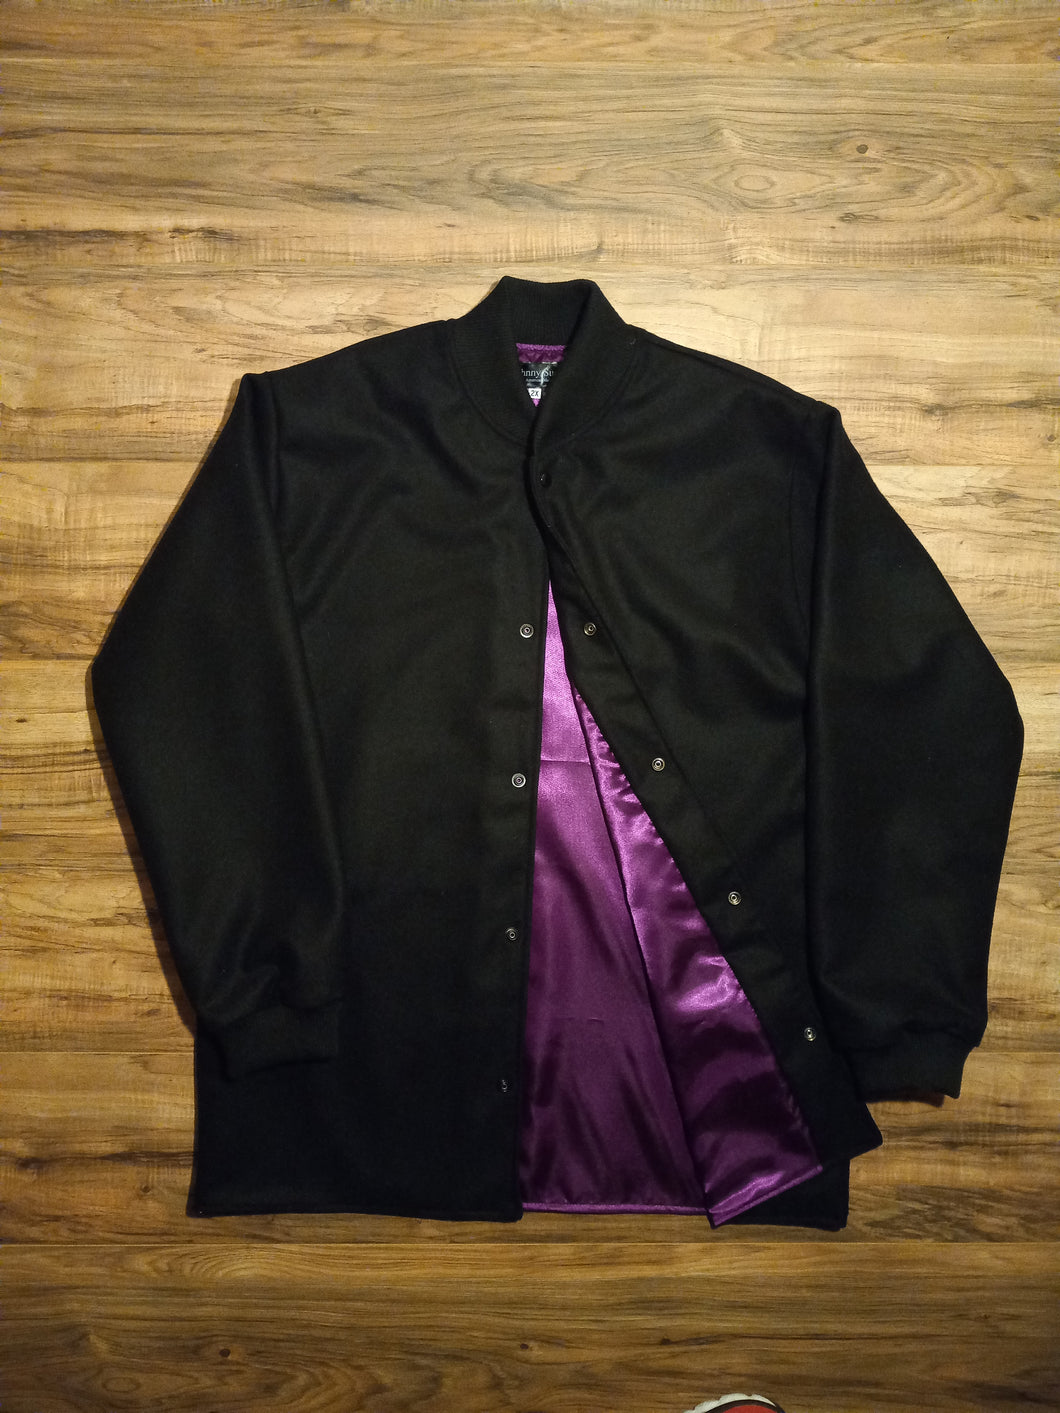 clicker coat black and purple